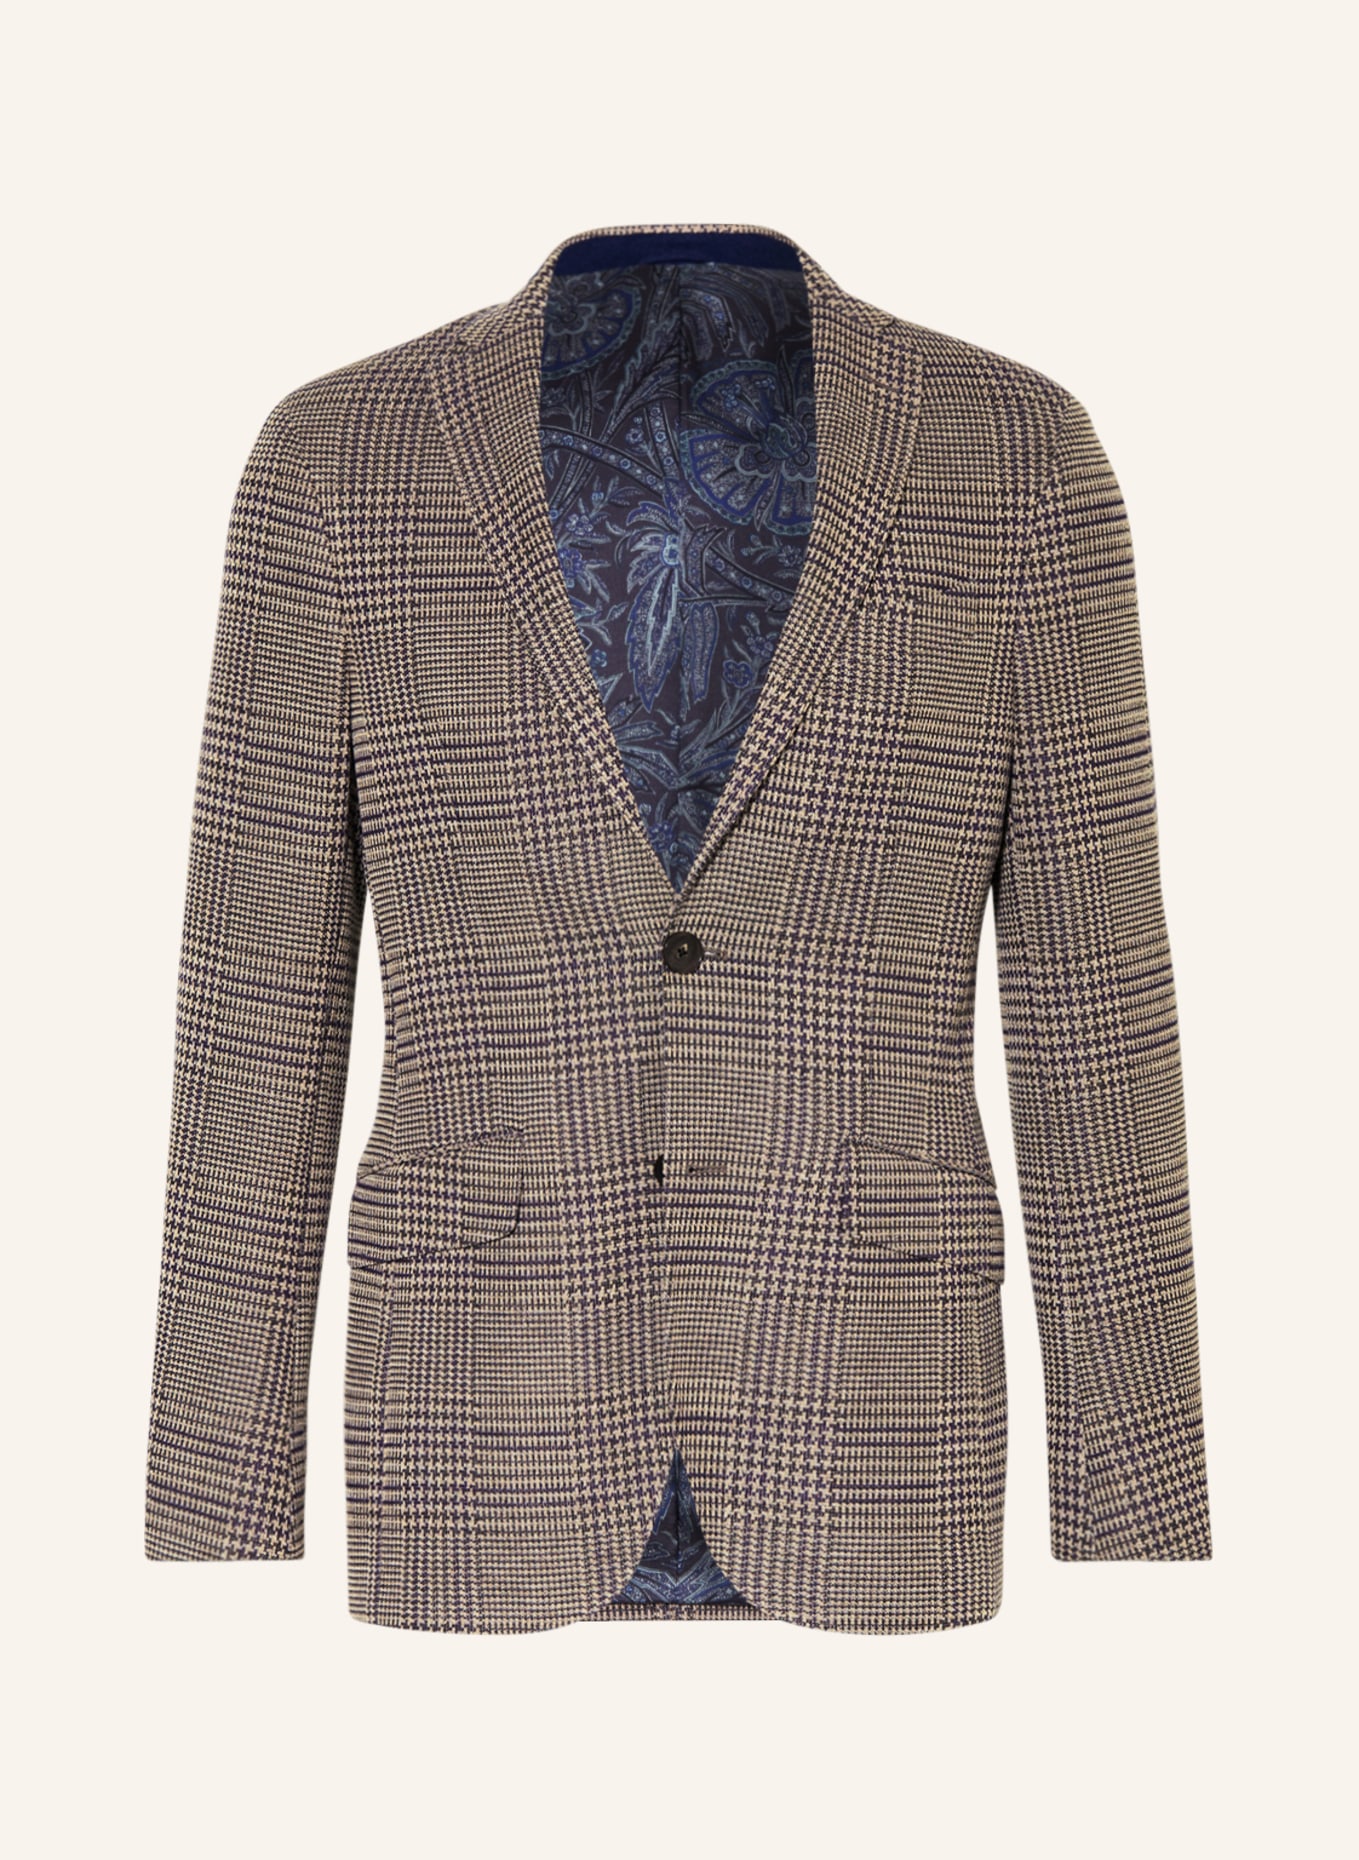 ETRO Tailored jacket regular fit, Color: BEIGE/ DARK BLUE (Image 1)